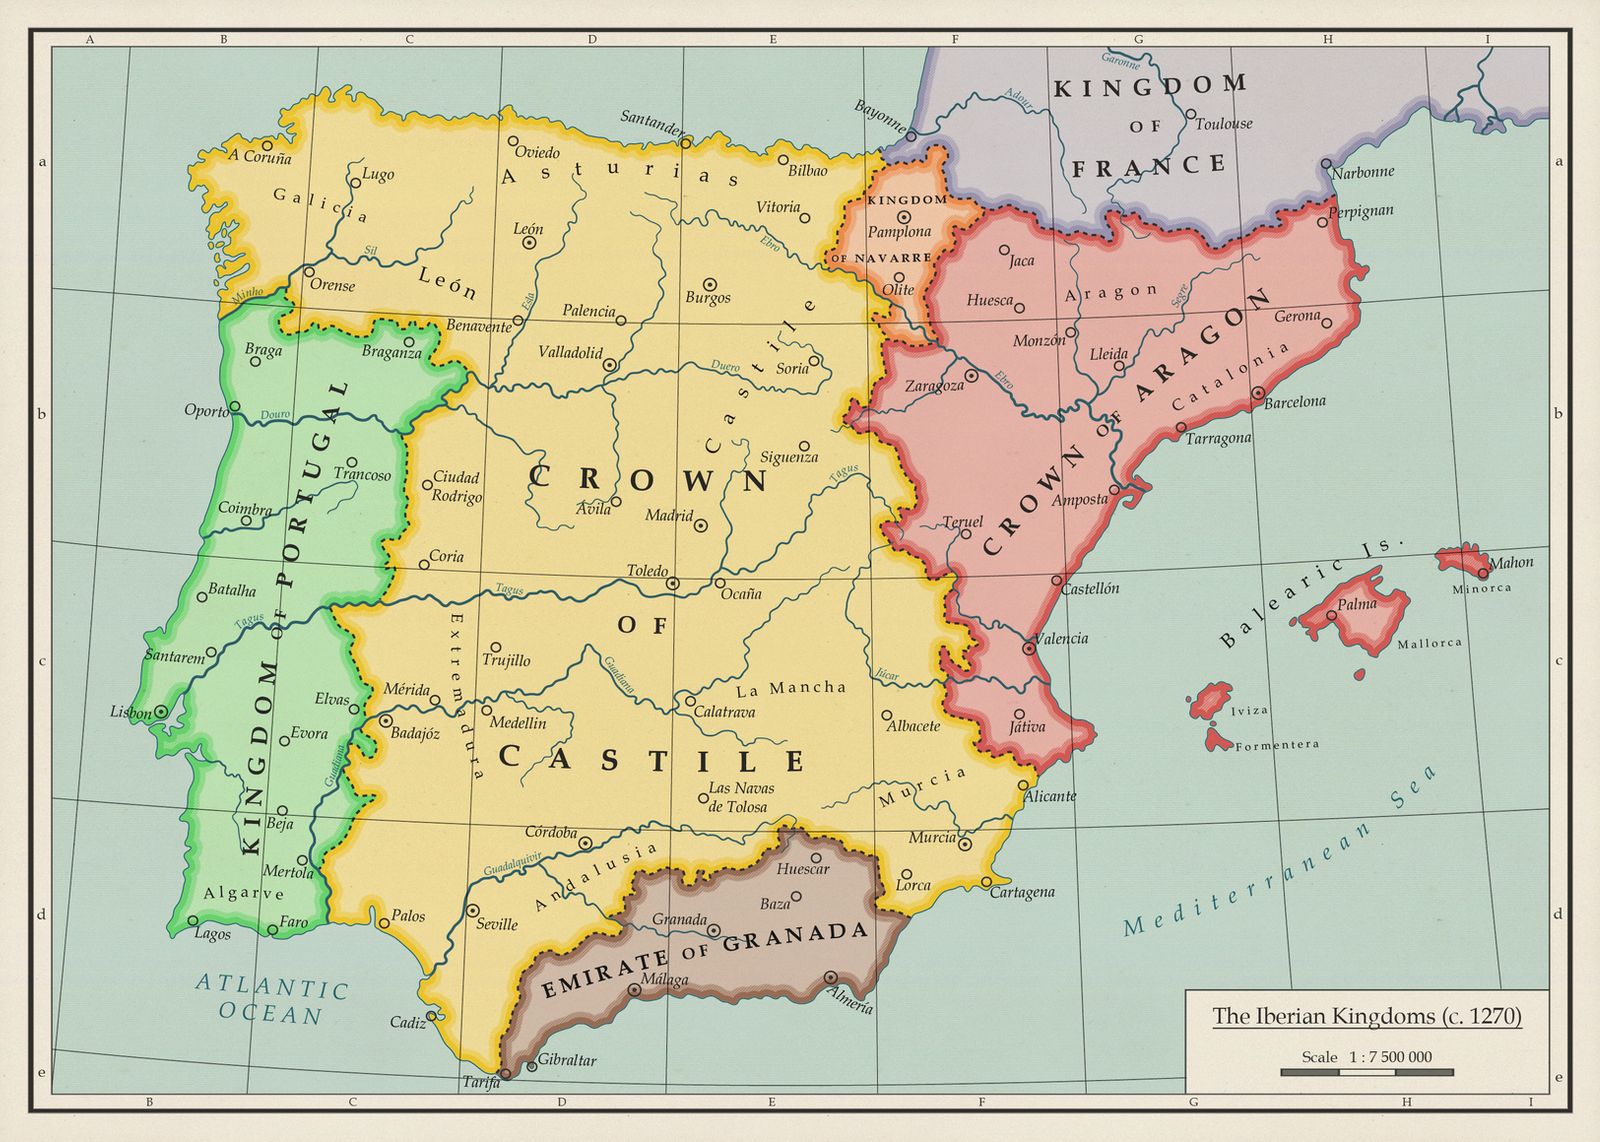 Map Of Iberian Peninsula Spain